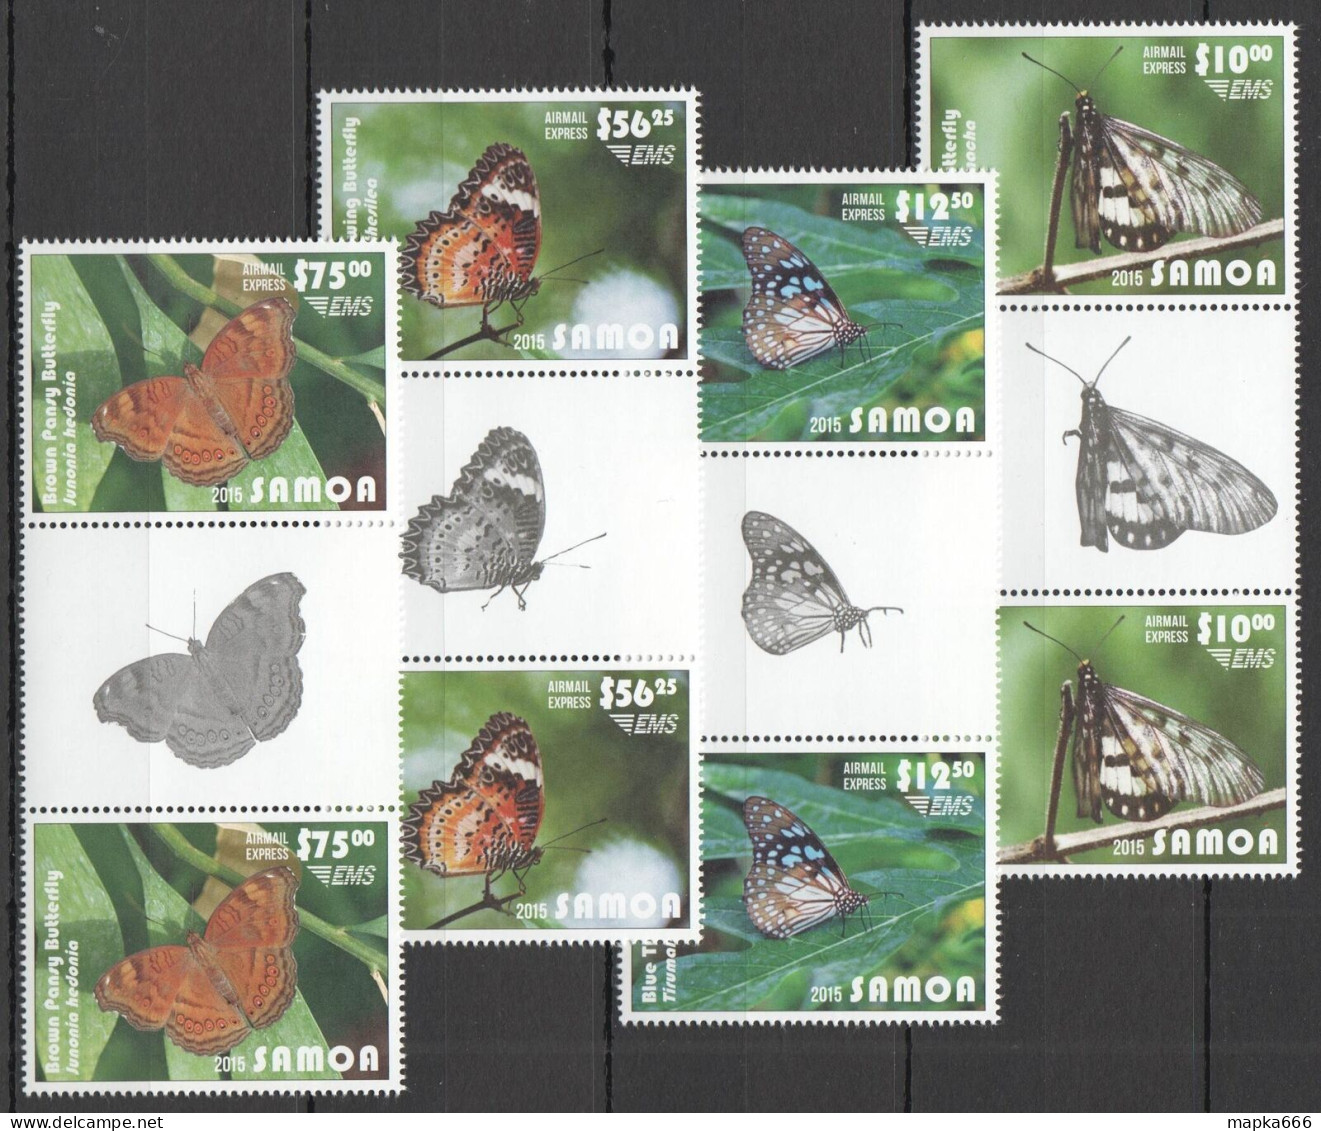 B1499 2015 Samoa Flora Fauna Butterflies Michel 240 Euro Gutter 2Set Mnh - Papillons